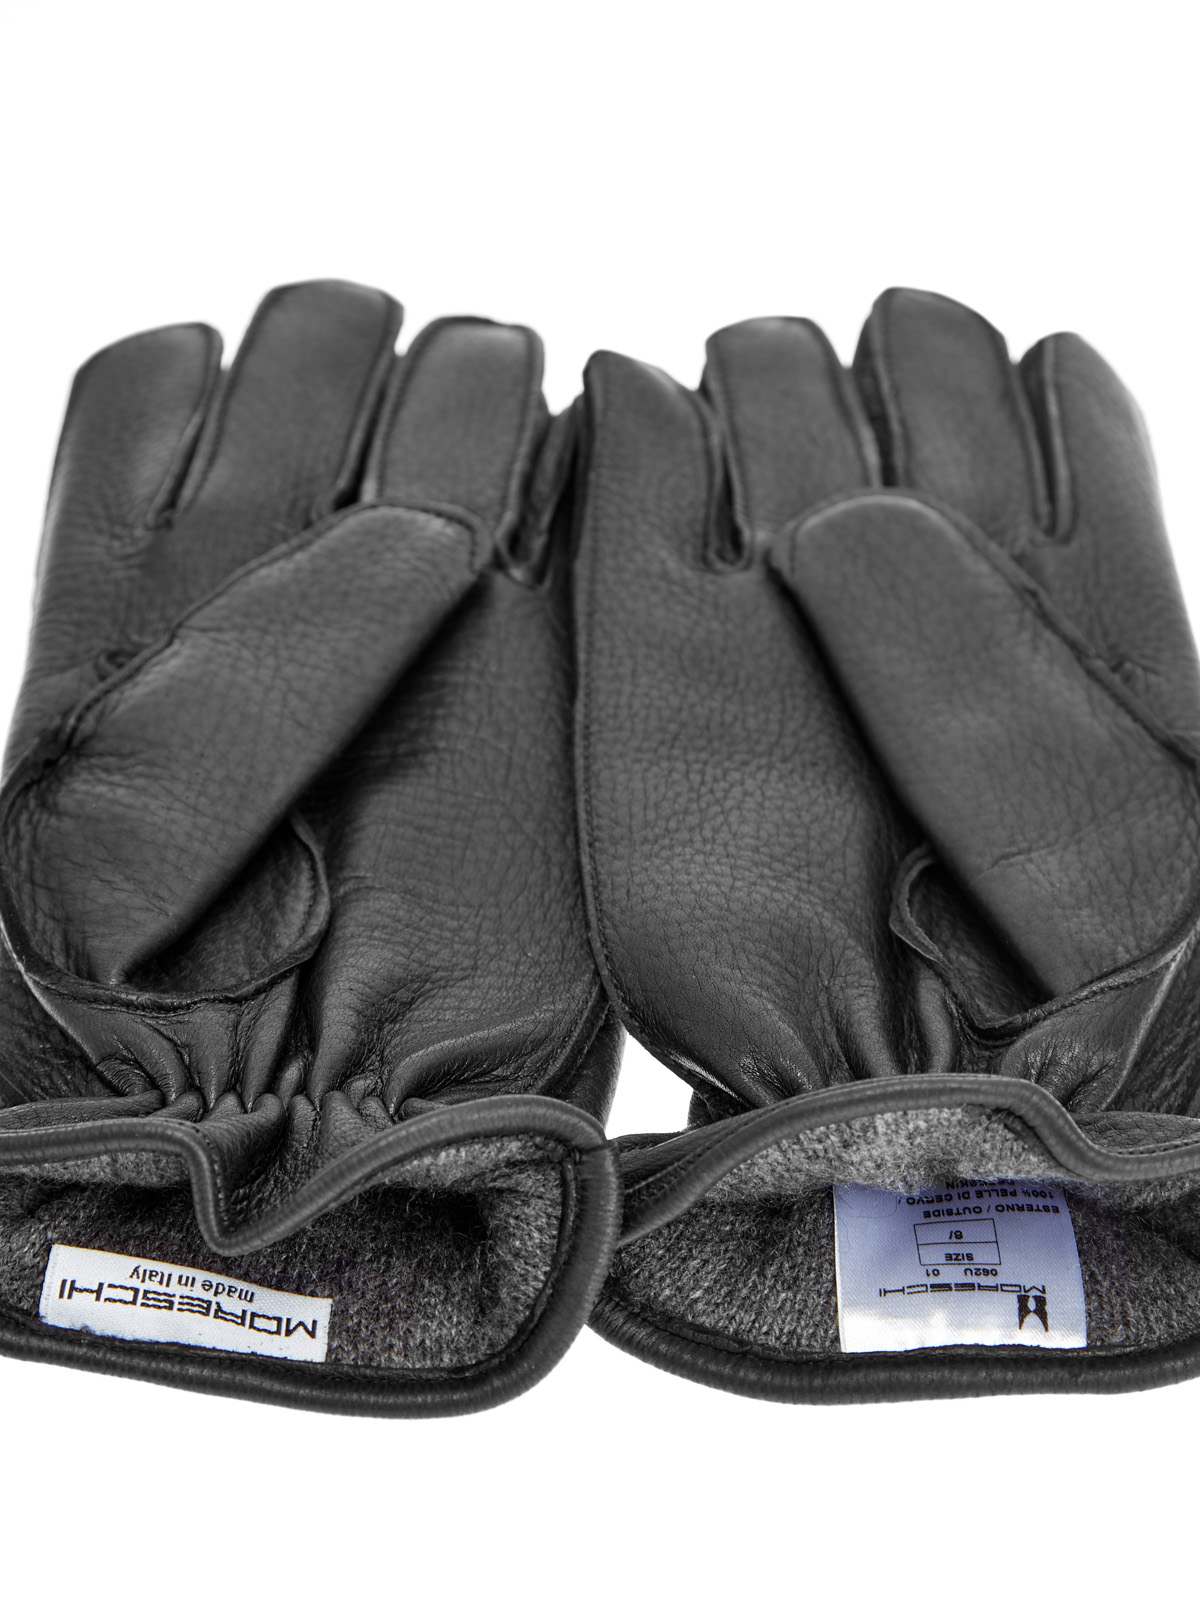 Однотонные перчатки из кожи оленя и кашемира MORESCHI, цвет черный, размер L;XS;S;M - фото 3